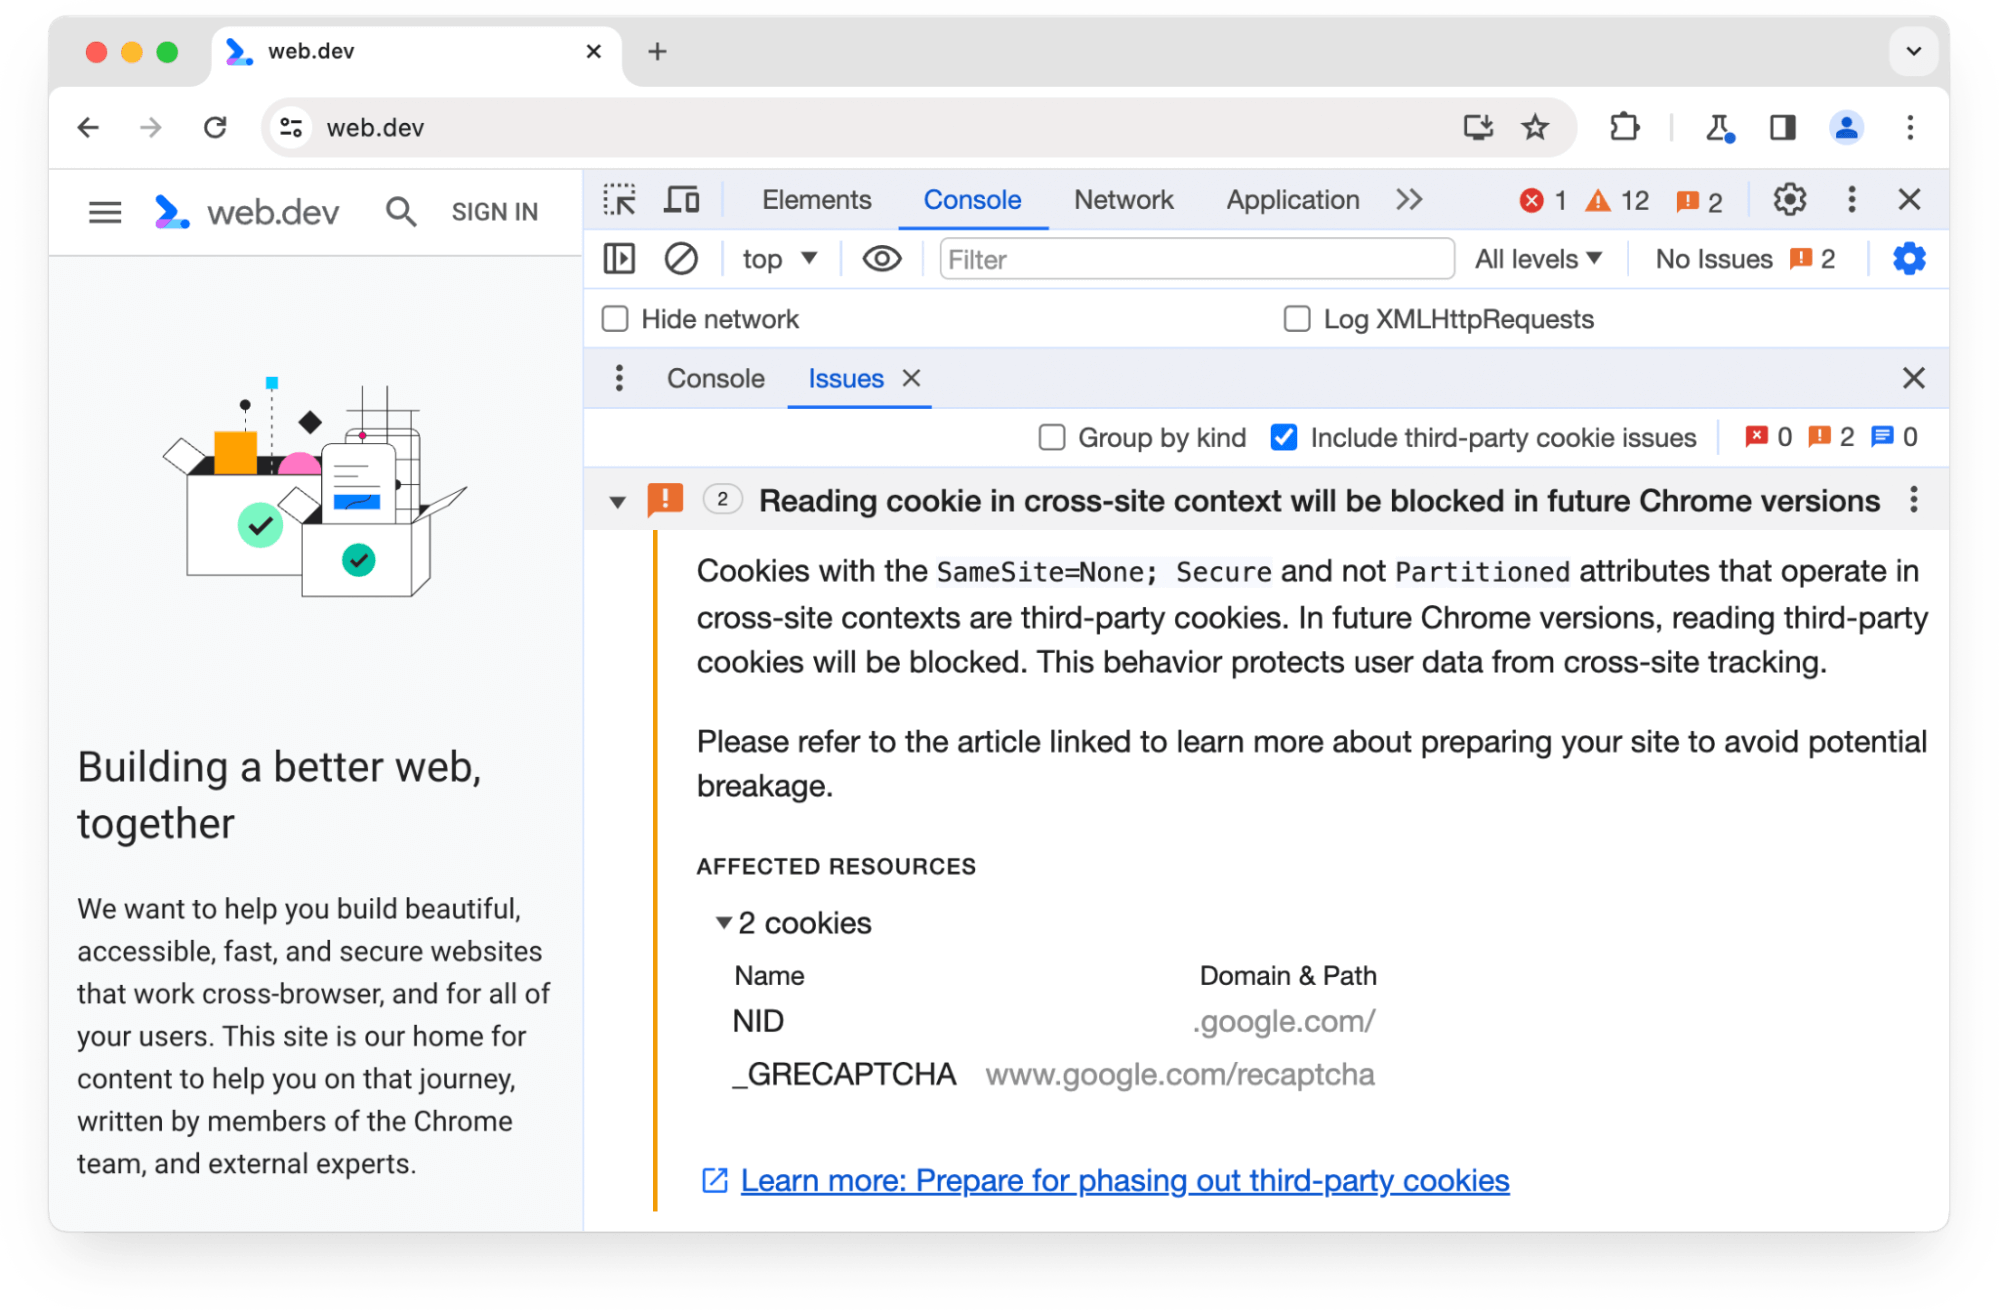 בחלונית הבעיות בכלי הפיתוח ל-Chrome מוצגת אזהרה לגבי שני קובצי cookie של צד שלישי שייחסמו בגרסאות עתידיות של Chrome.